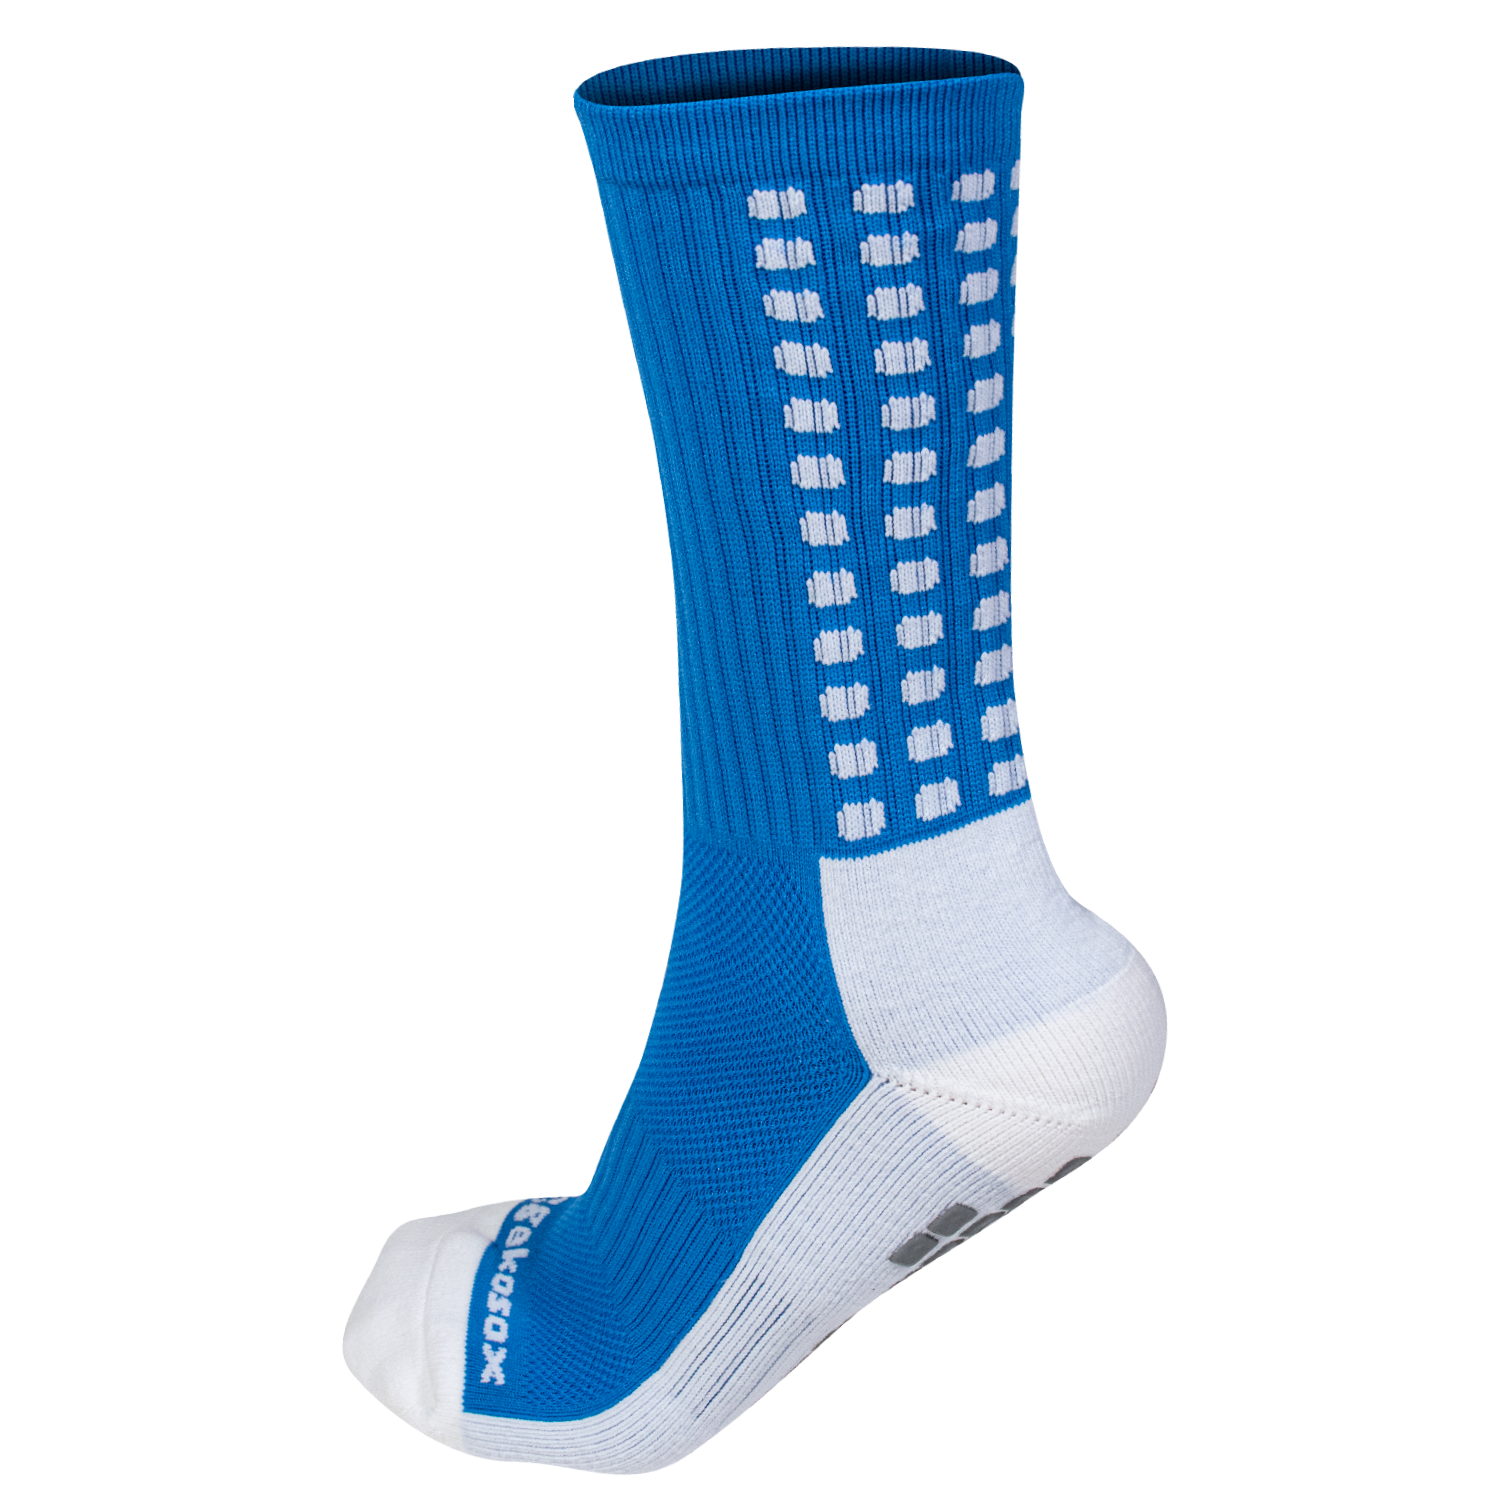 Grip Socks by Gekosox 5